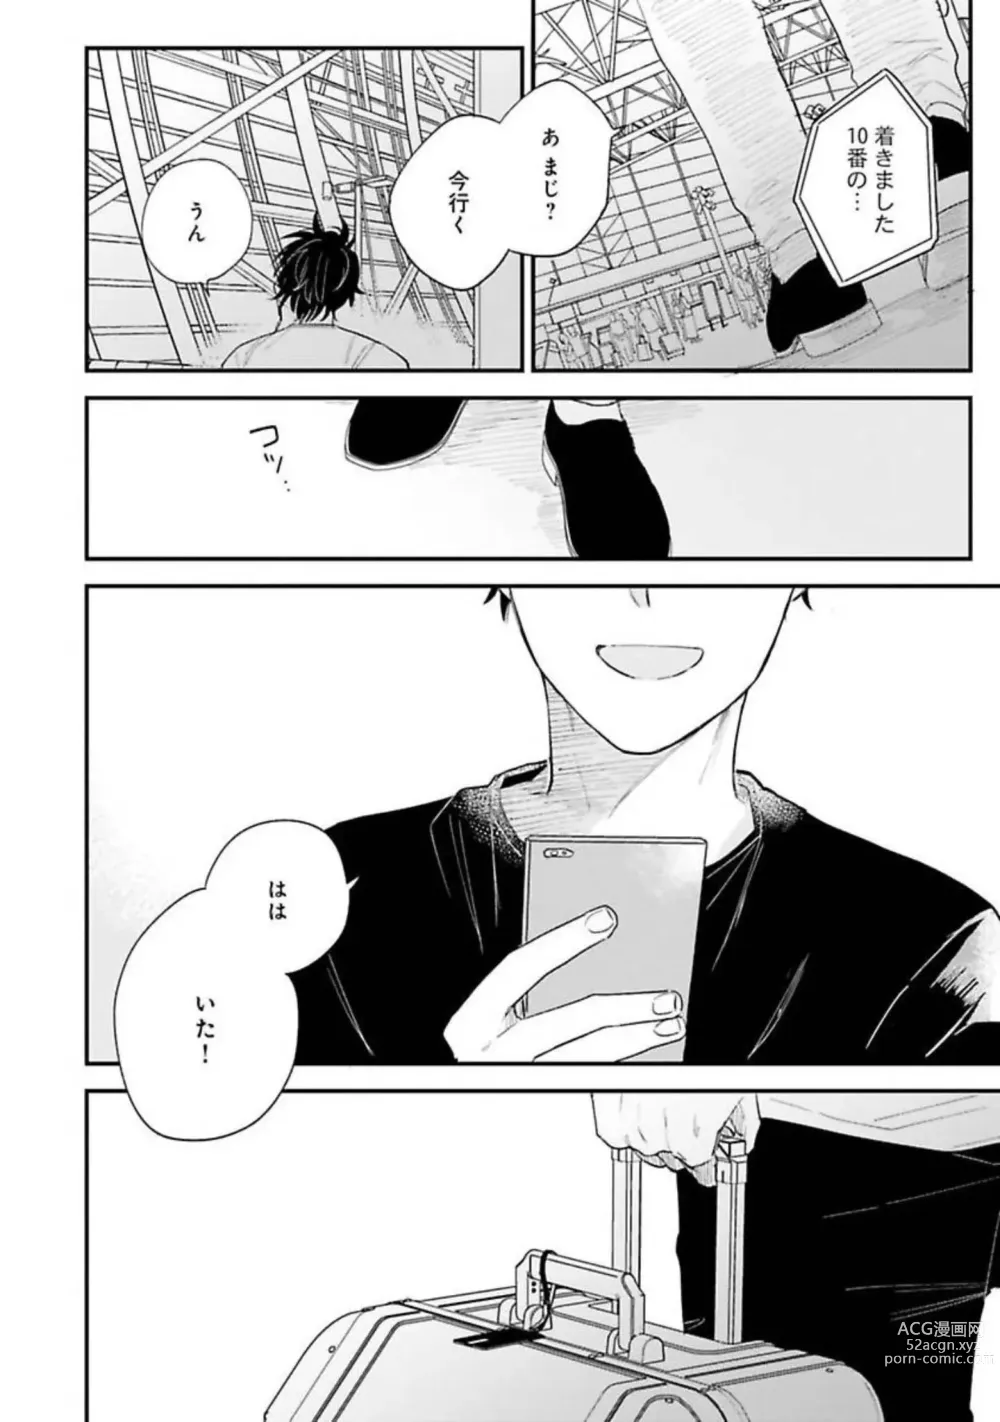 Page 152 of manga Senpai, Danjite Koi de wa!